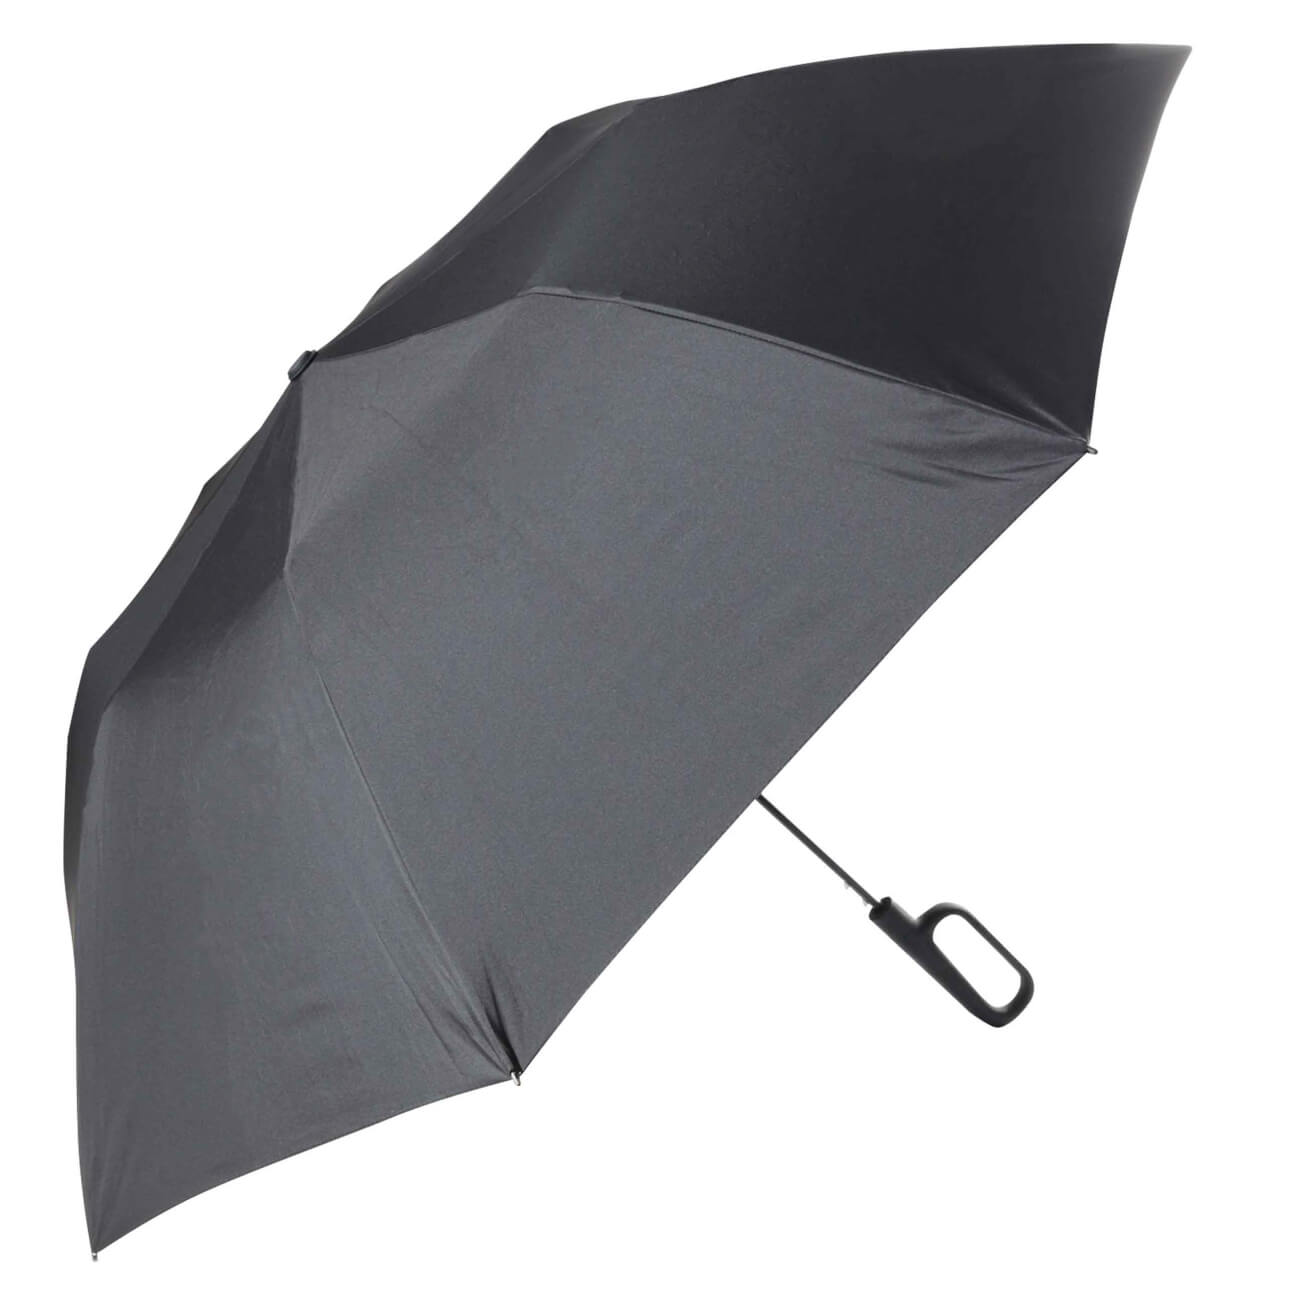 Зонт, 70 см, складной, полу-автоматический, с ручкой-карабином, эпонж, черный, Rainfall